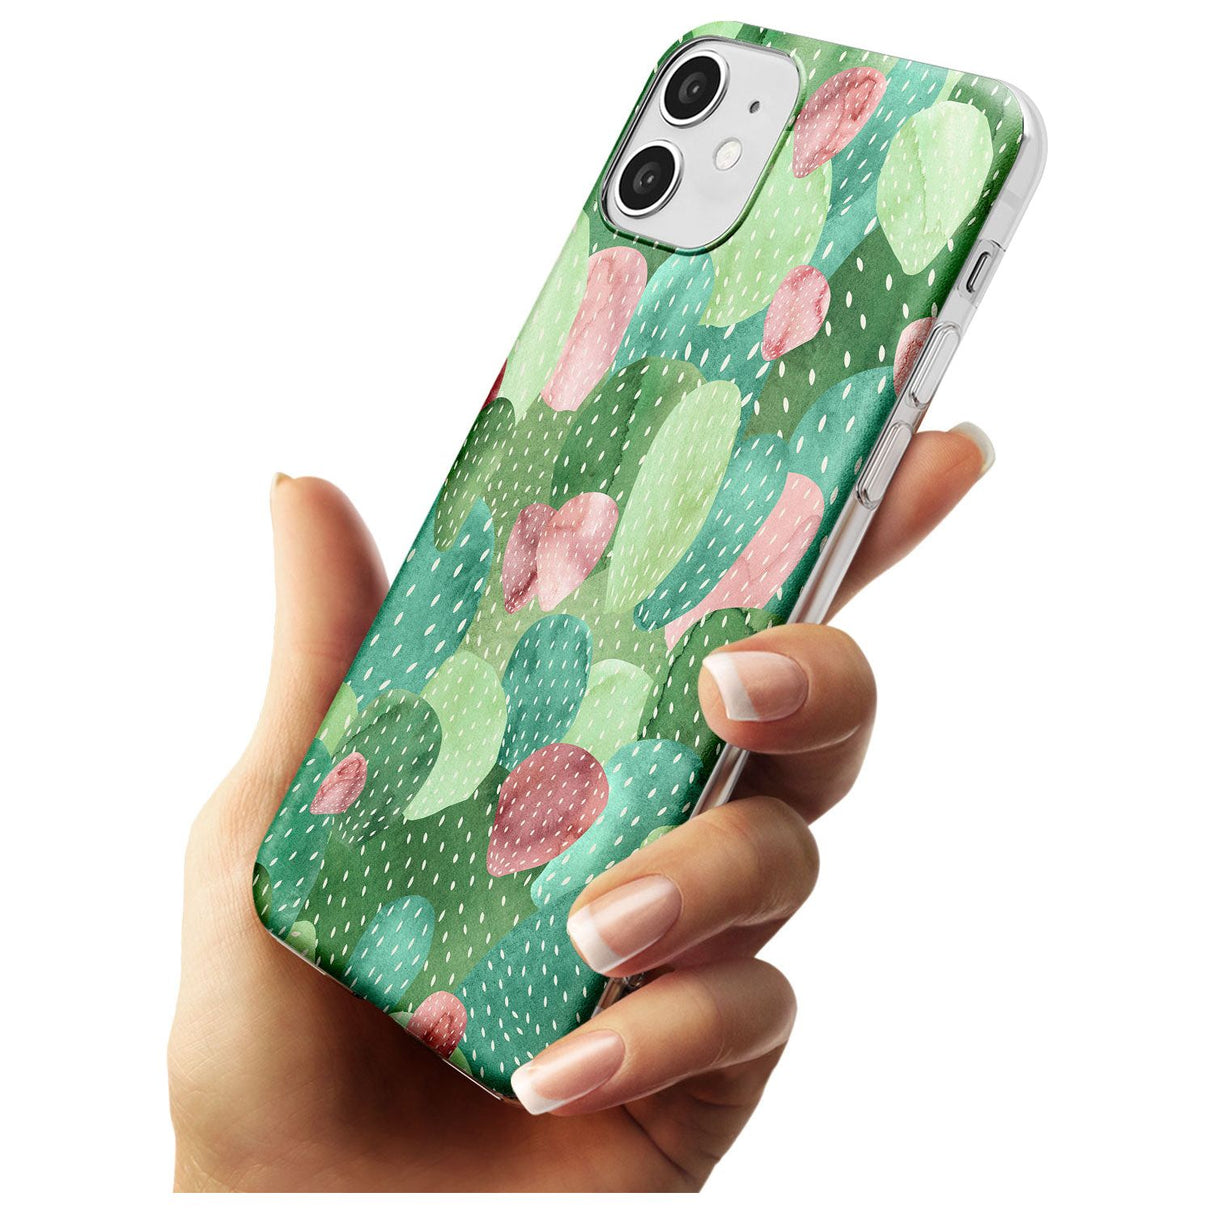 Colourful Cactus Mix Design Slim TPU Phone Case for iPhone 11